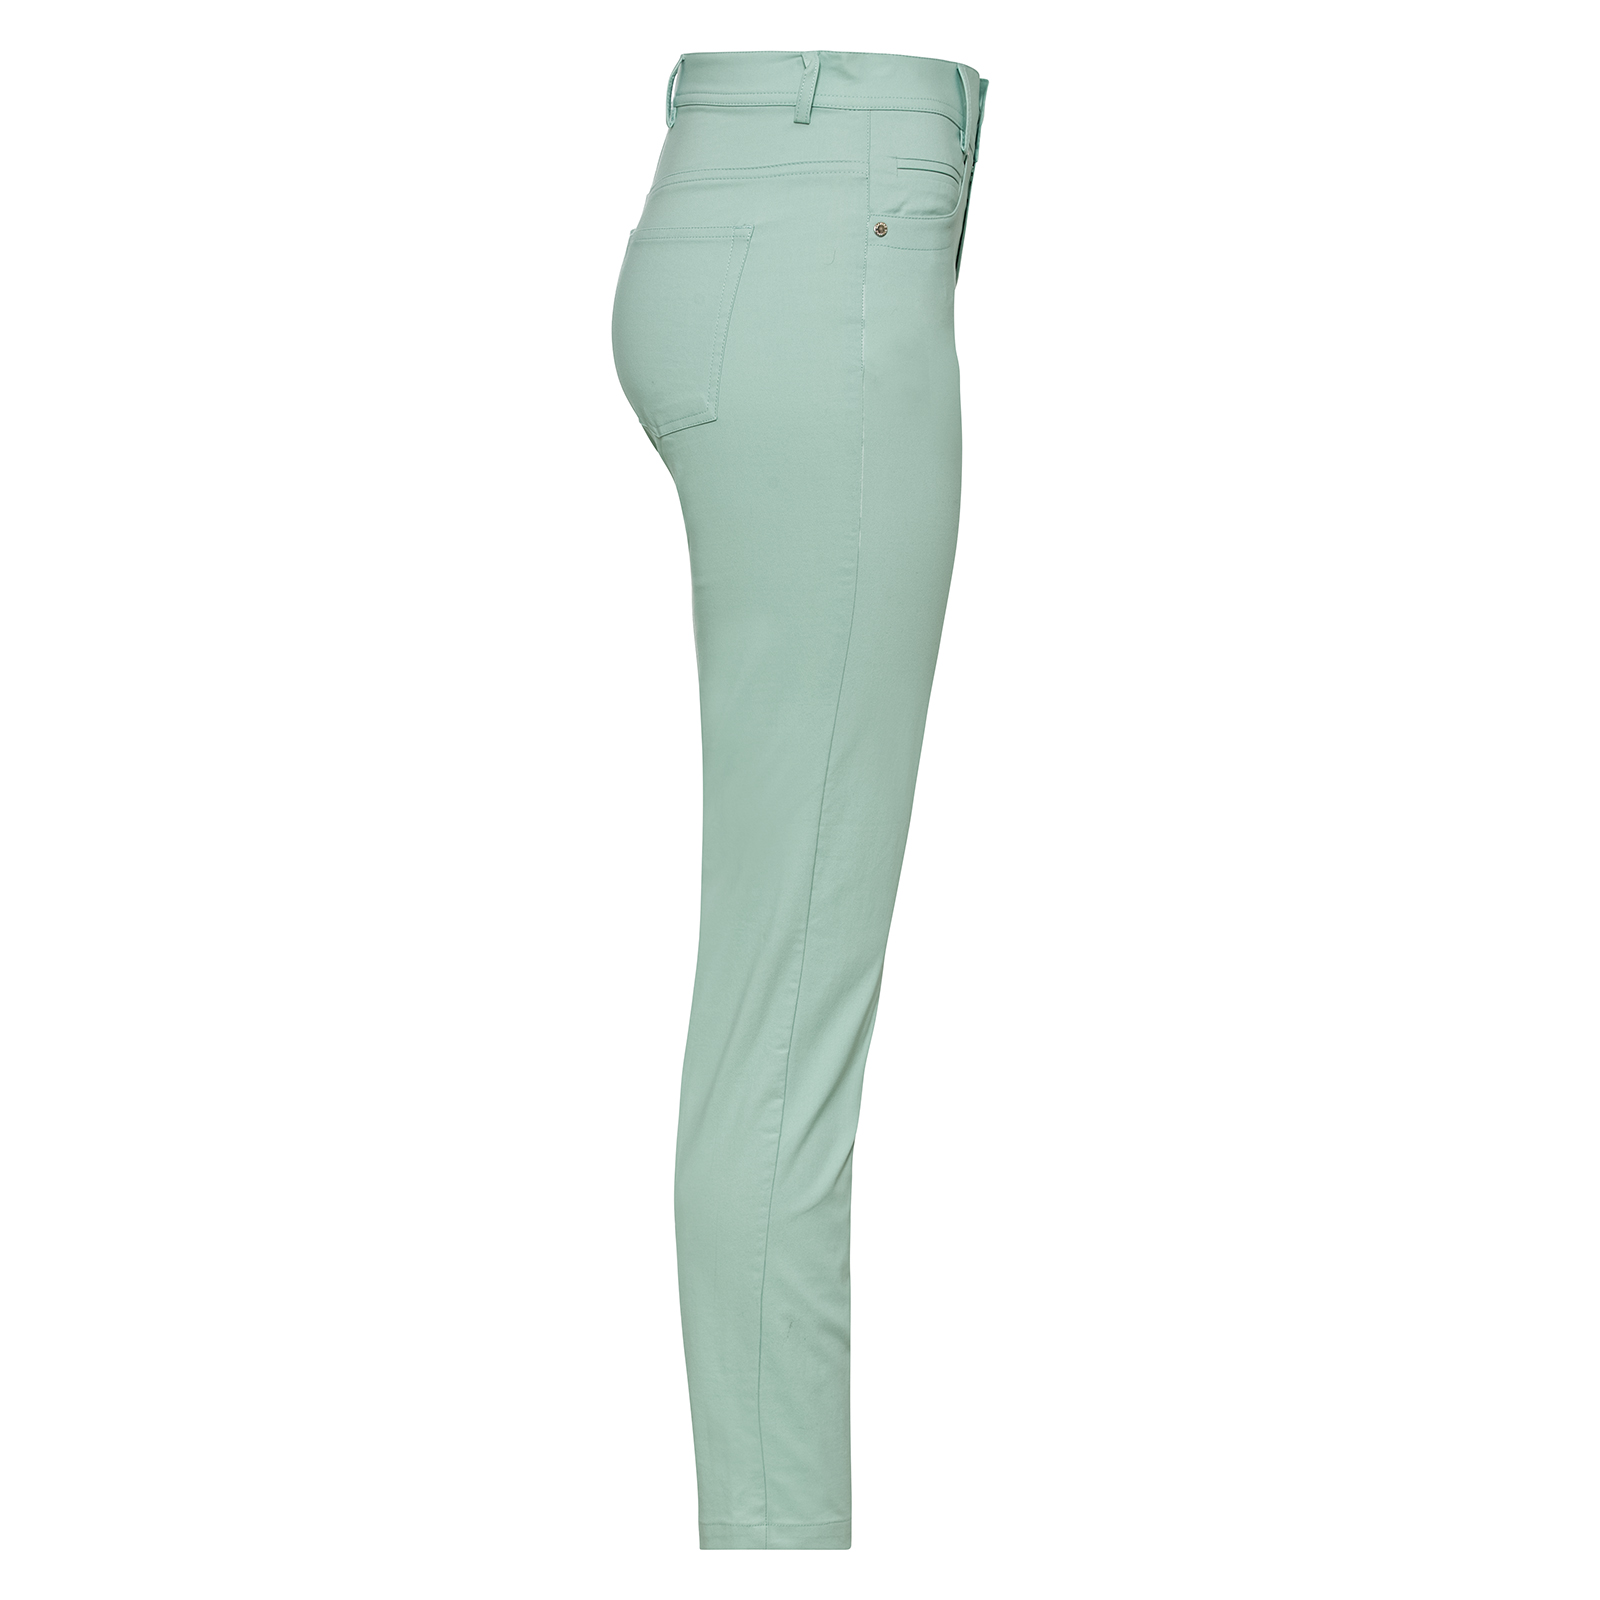 Pantalón de mujer de 7/8 con diseño de 5 bolsillos de tejido elástico con protección solar